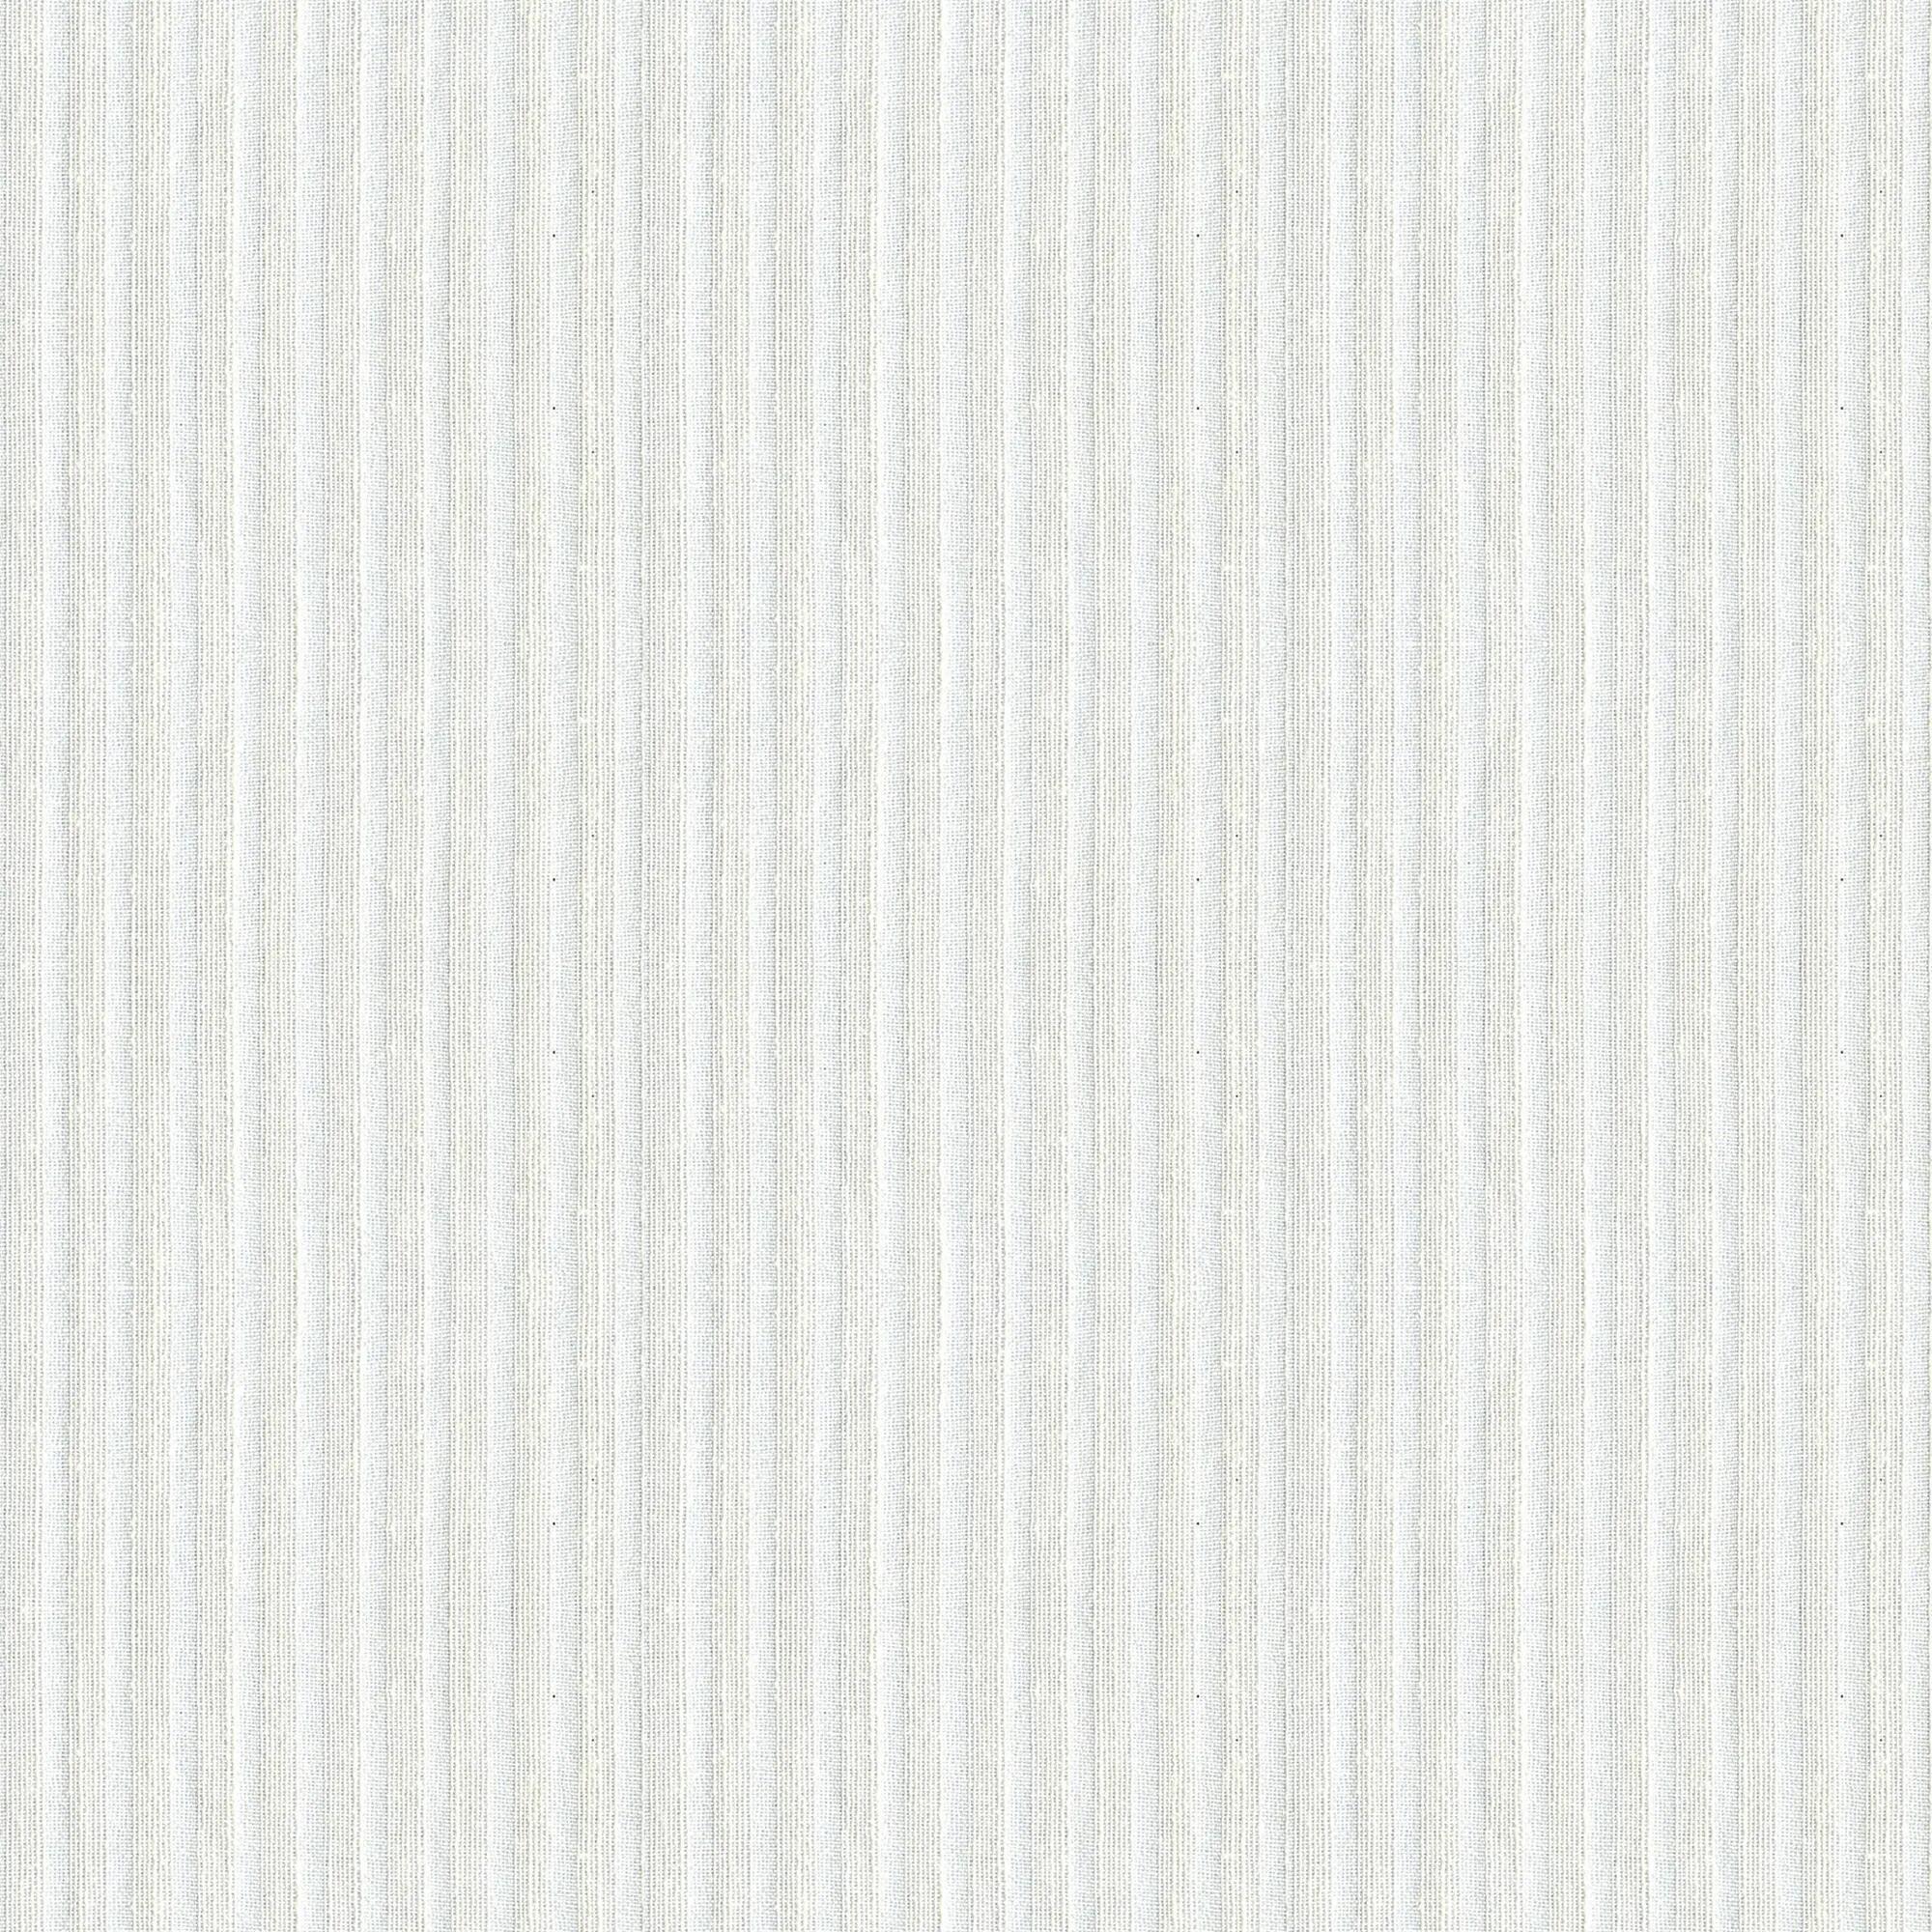 Visillo al corte fil coupé abaco blanco ancho 310 cm